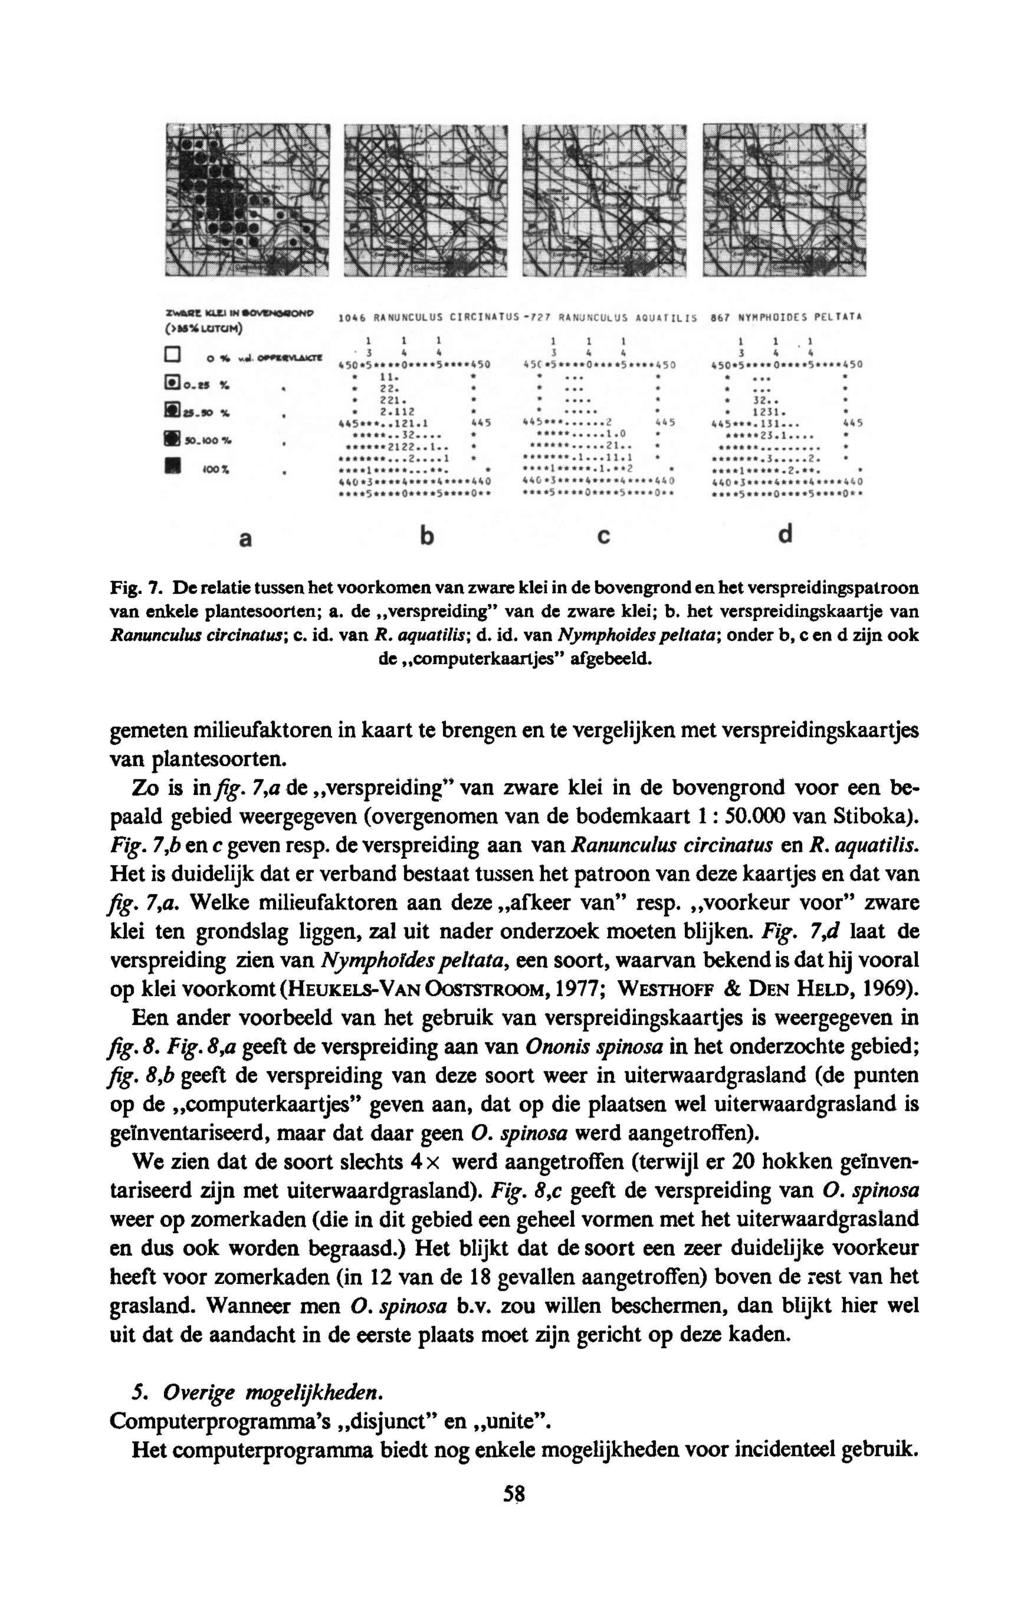 Fig. 7. De relatie tussen het voorkomen van zware klei in de bovengrond en het verspreidingspatroon van enkele plantesoorten; a. de verspreiding van de zware klei; b.